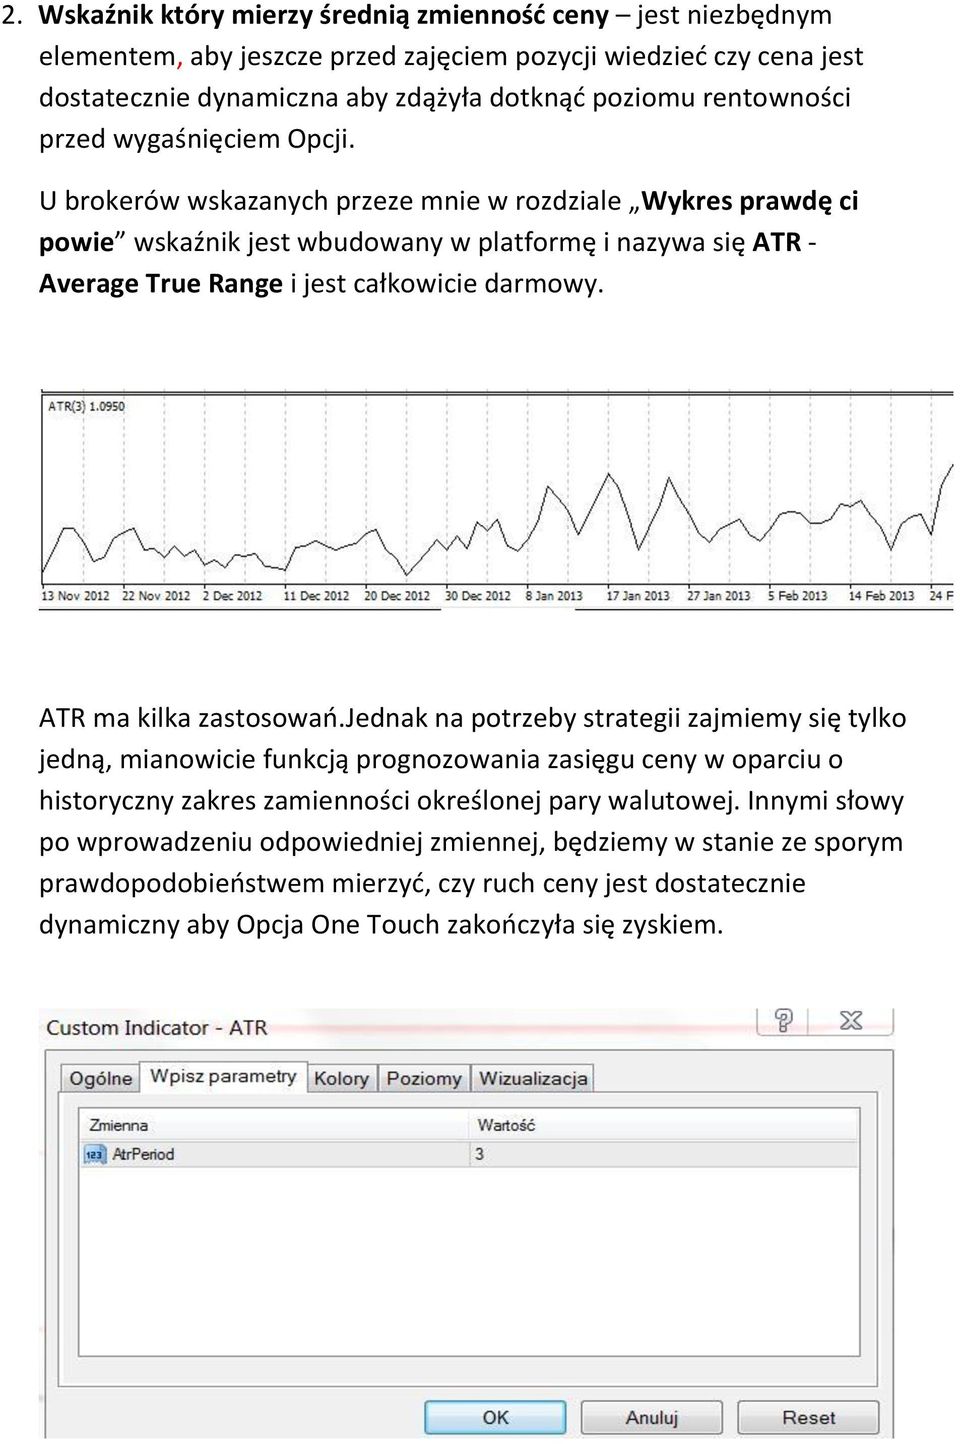 U brokerów wskazanych przeze mnie w rozdziale Wykres prawdę ci powie wskaźnik jest wbudowany w platformę i nazywa się ATR - Average True Range i jest całkowicie darmowy. ATR ma kilka zastosowao.